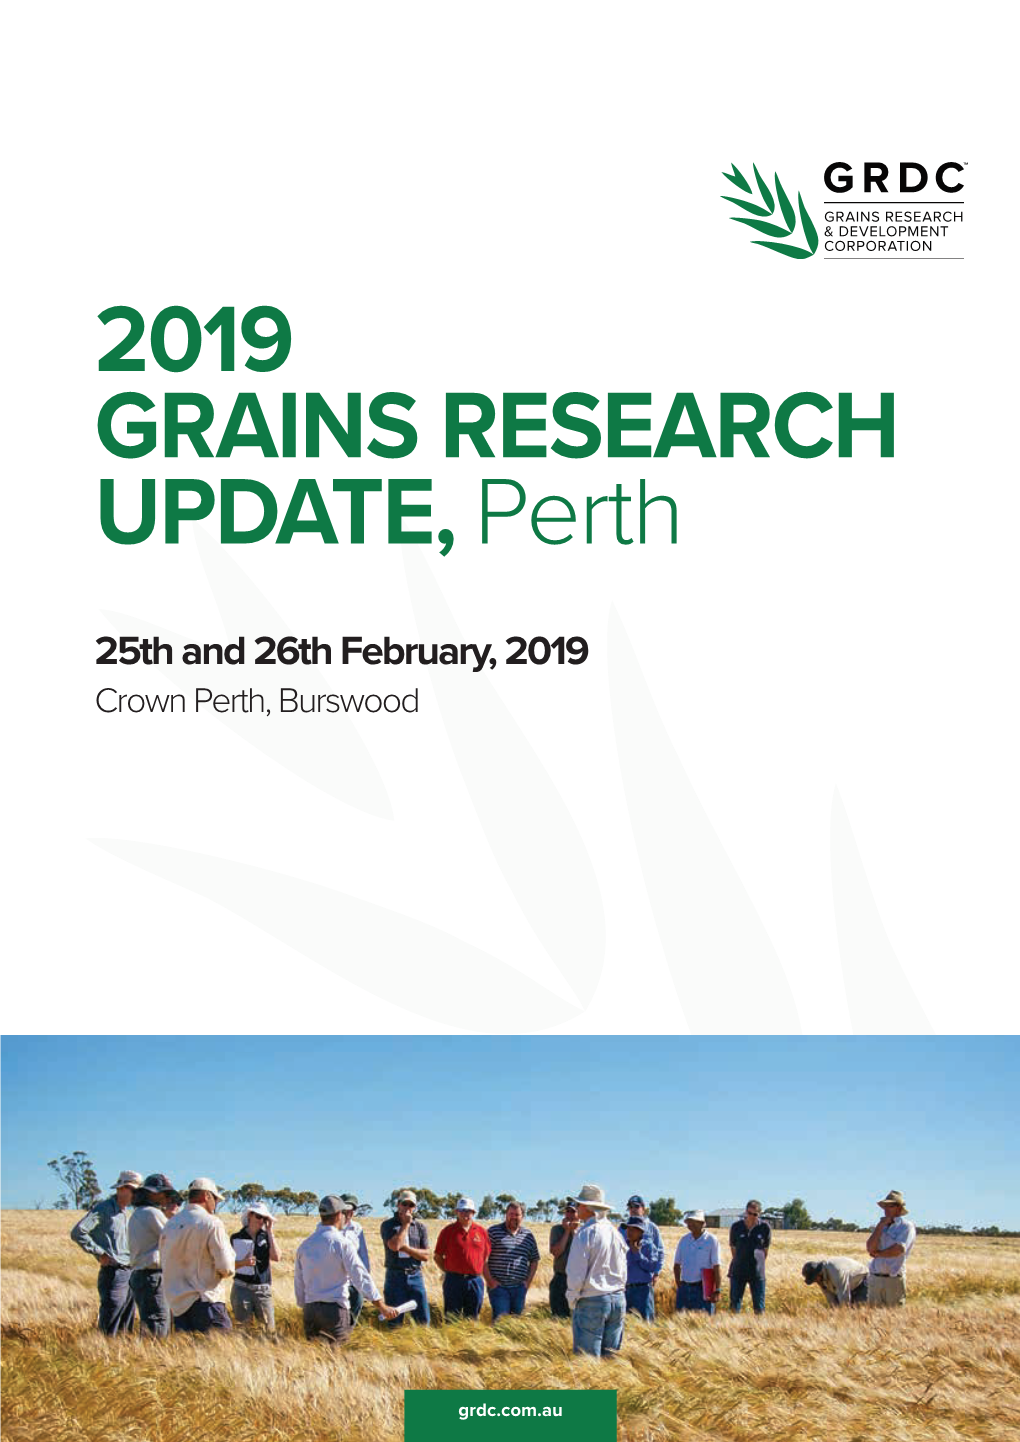 2019 GRAINS RESEARCH UPDATE,Perth